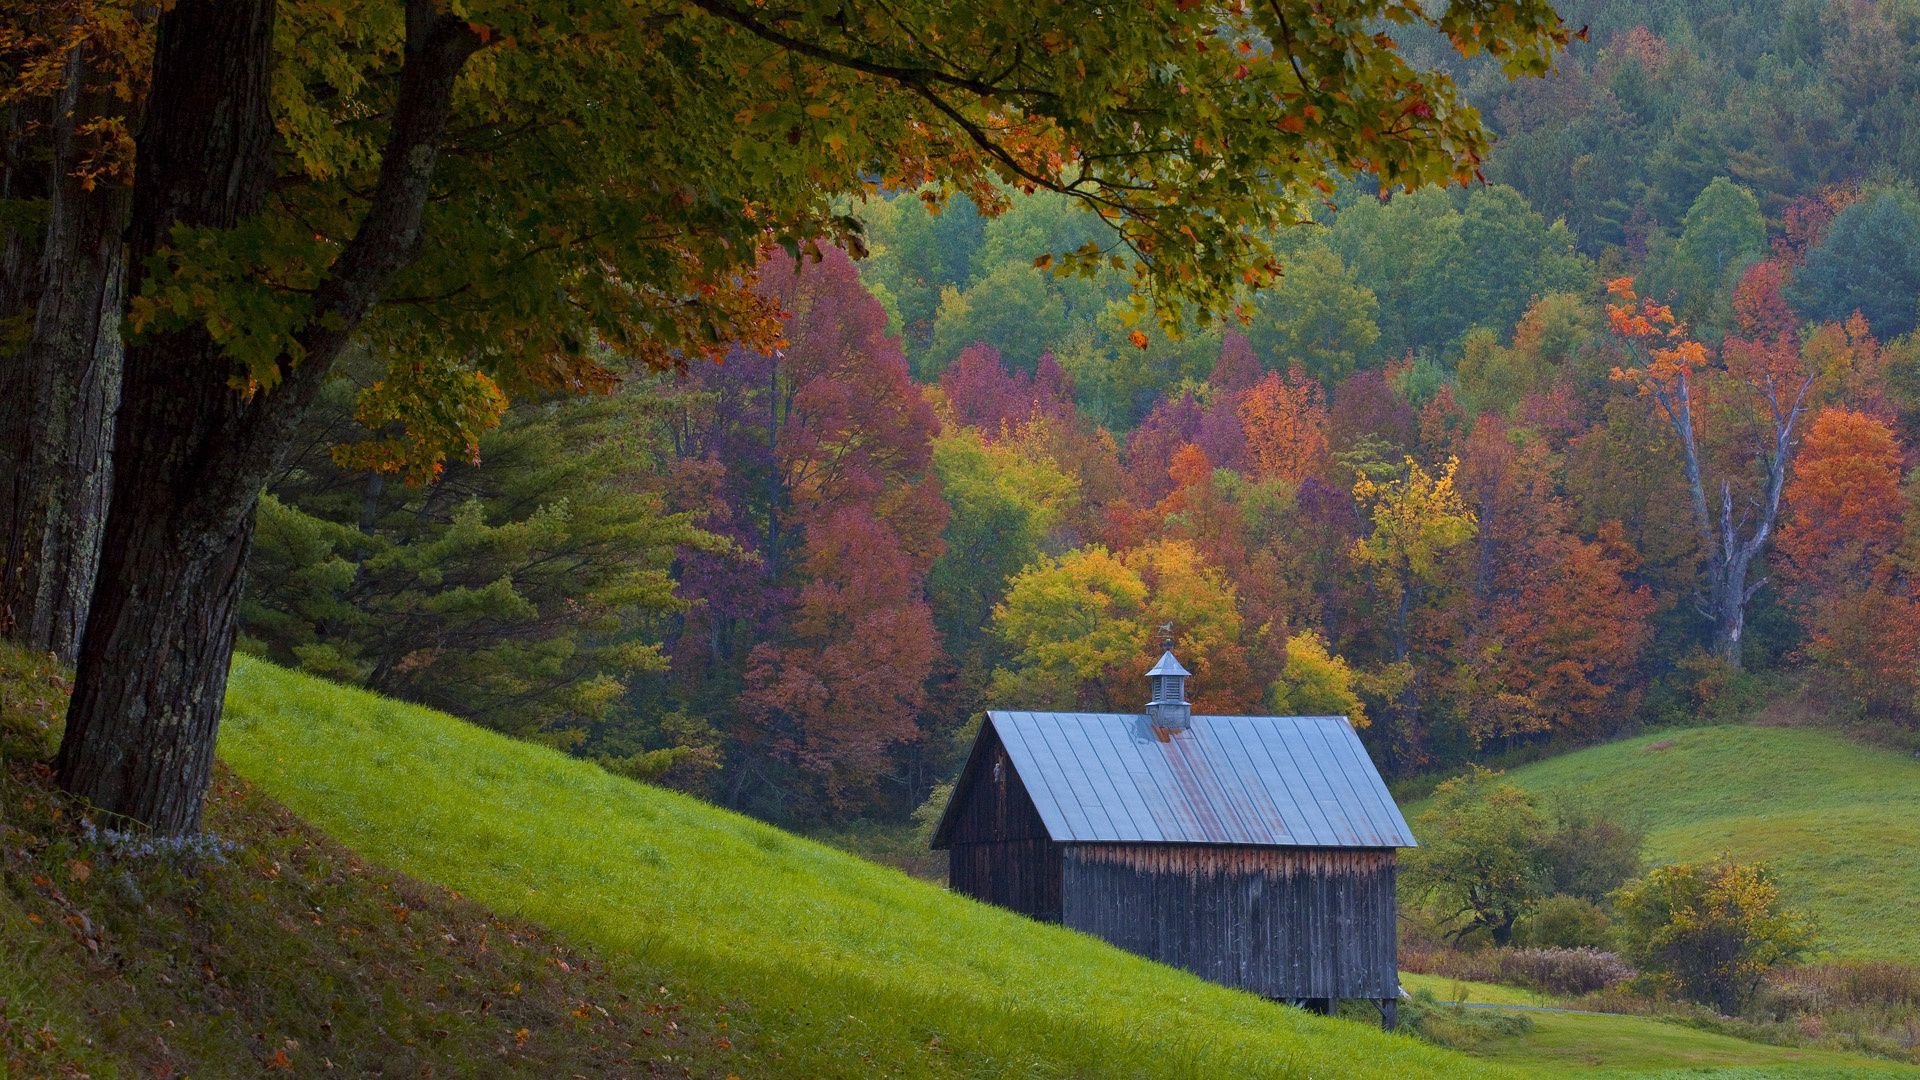 Vermont Autumn Wallpaper HD Free HD Wallpaper. Vermont, Old barns, Autumn wallpaper hd